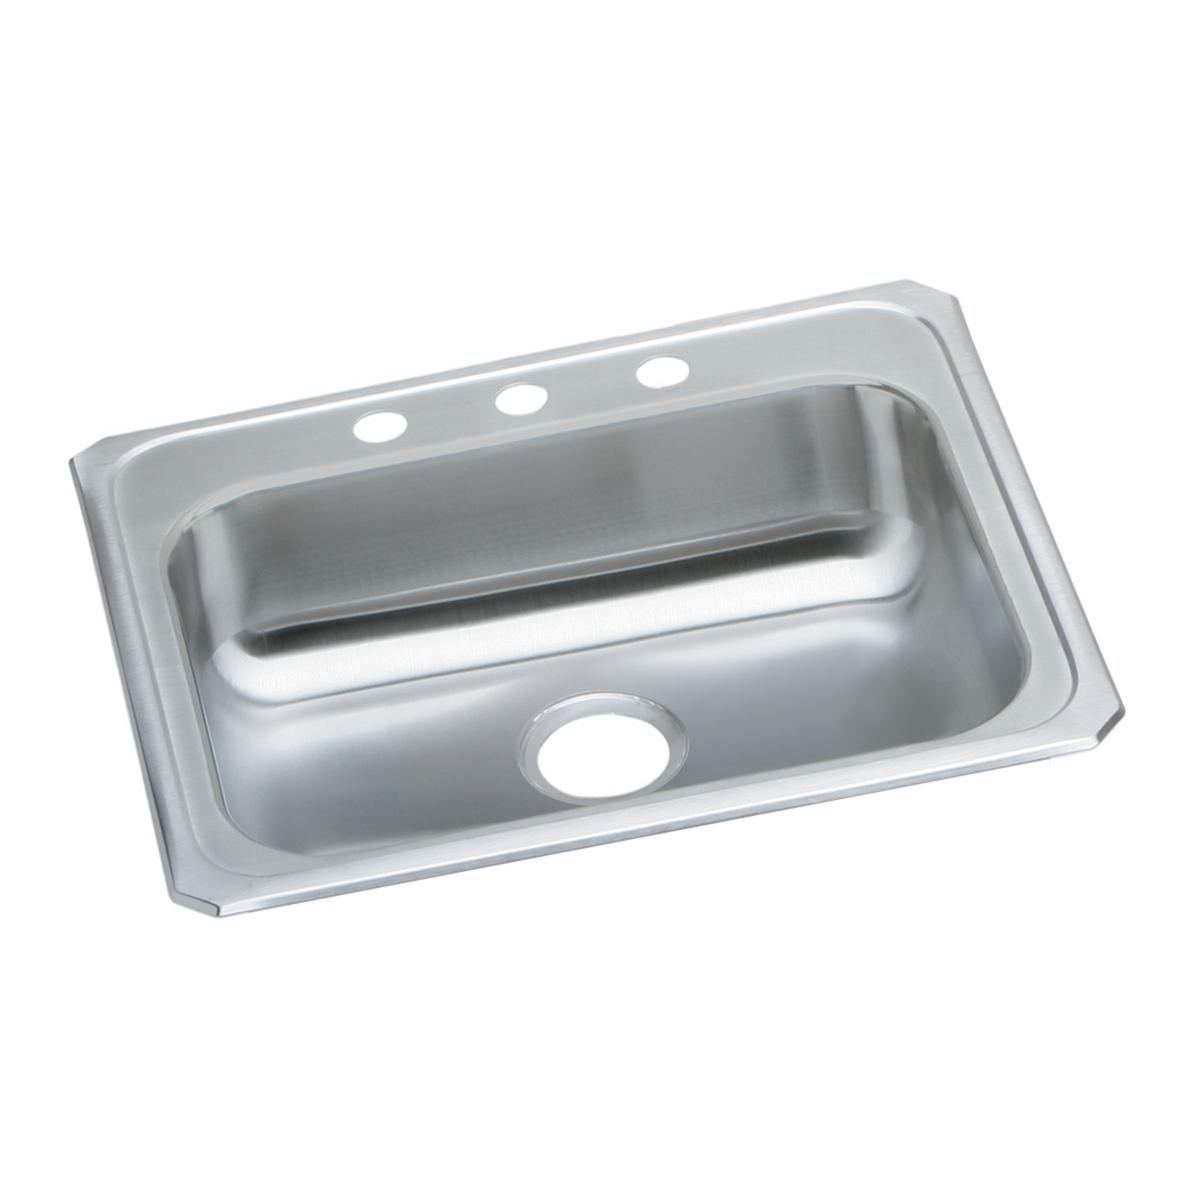 Elkay 25" x 21-1/4" Stainless Steel Single Bowl Drop-in Sink,  5-3/8" Deep